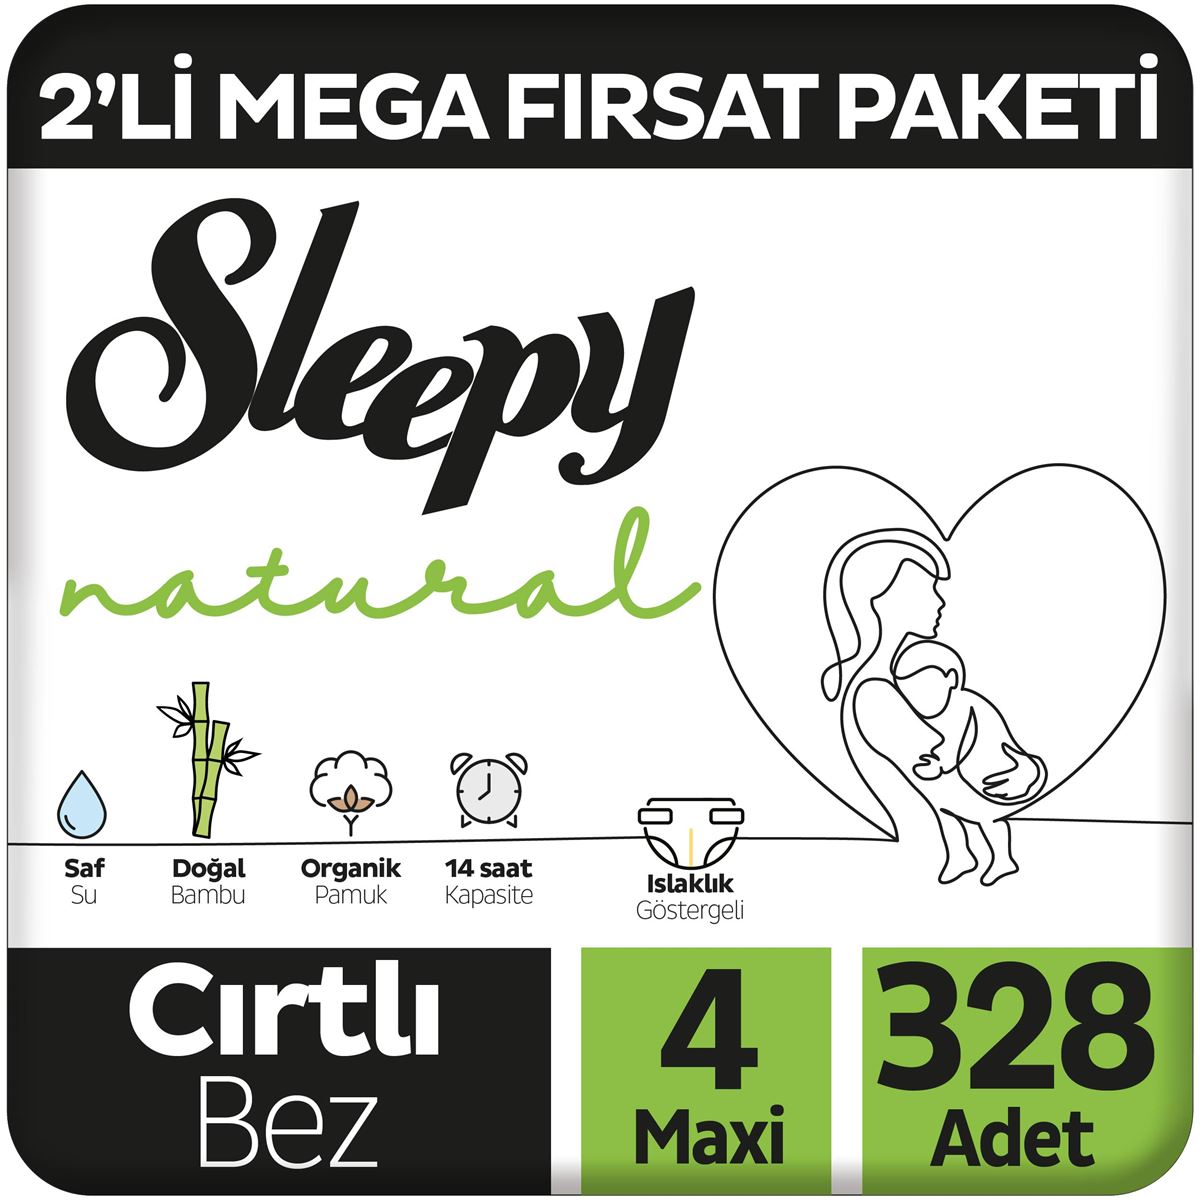 Sleepy Natural 2'li Mega Fırsat Paketi Bebek Bezi 4 Numara Maxi 328 Adet